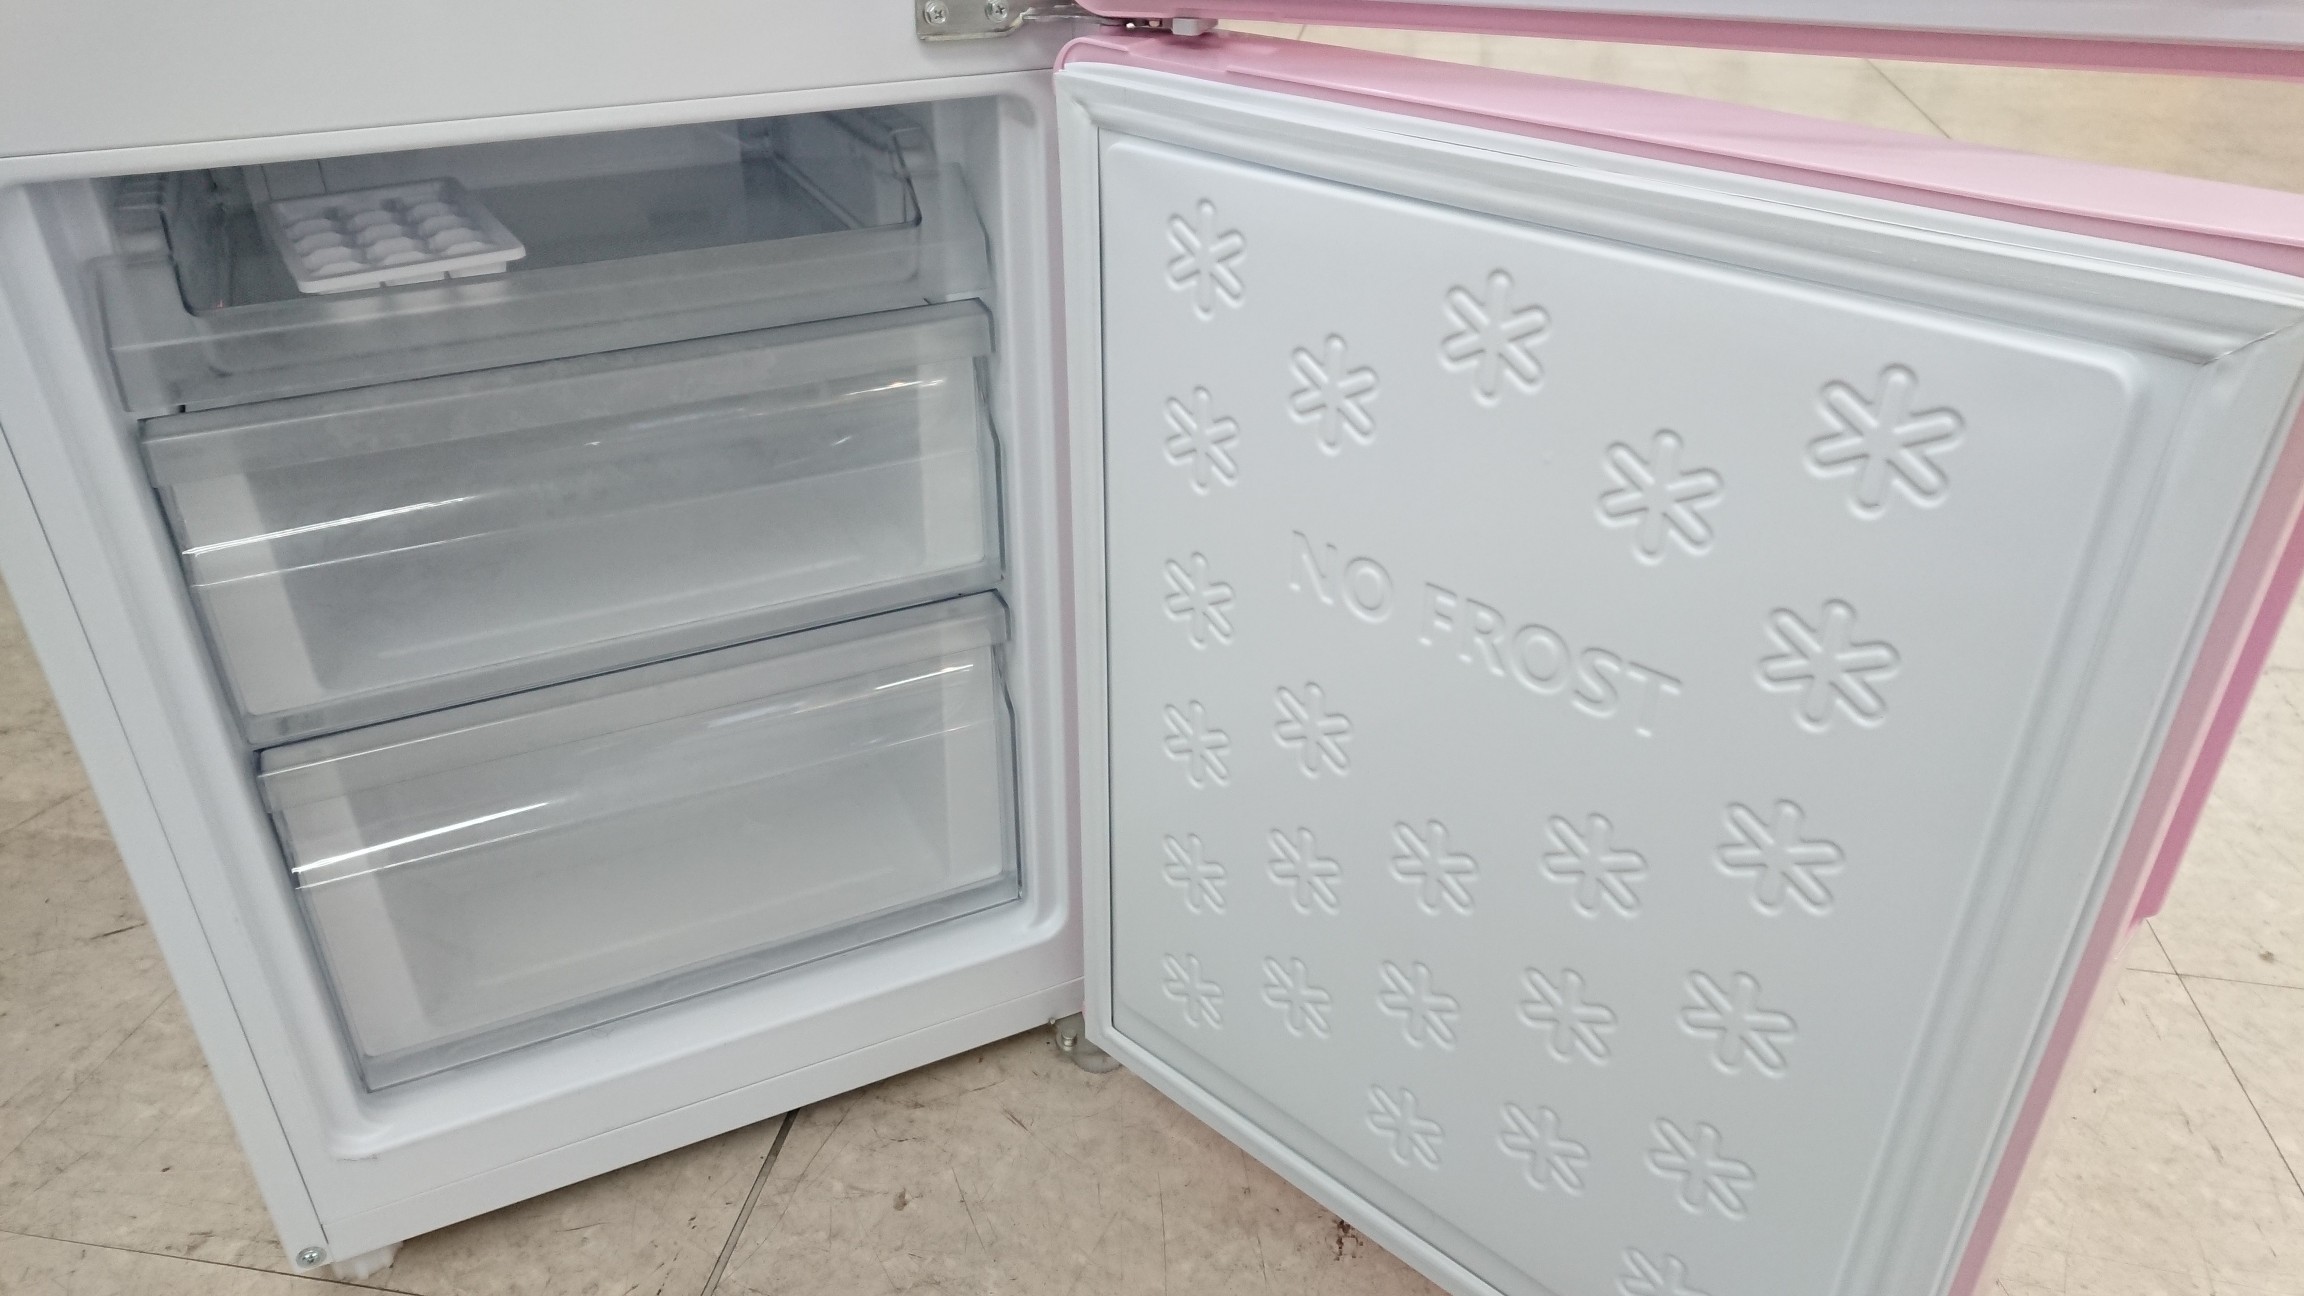 大人気 Haier ピンクの2ドア冷蔵庫が買取入荷 南大沢店 19年02月03日